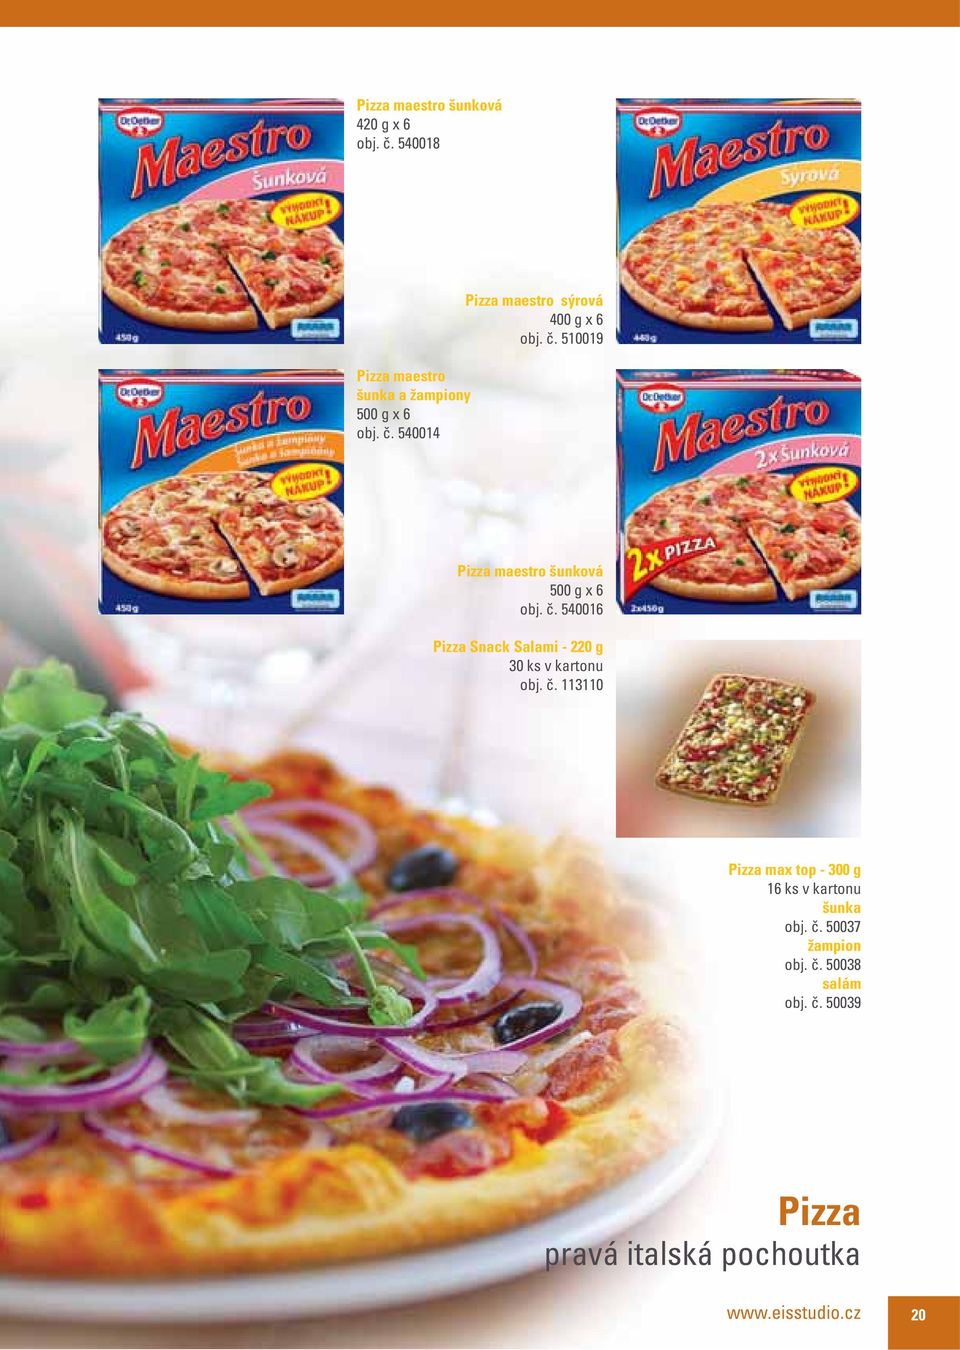 540016 Pizza Snack Salami - 220 g 30 ks v kartonu obj. č.